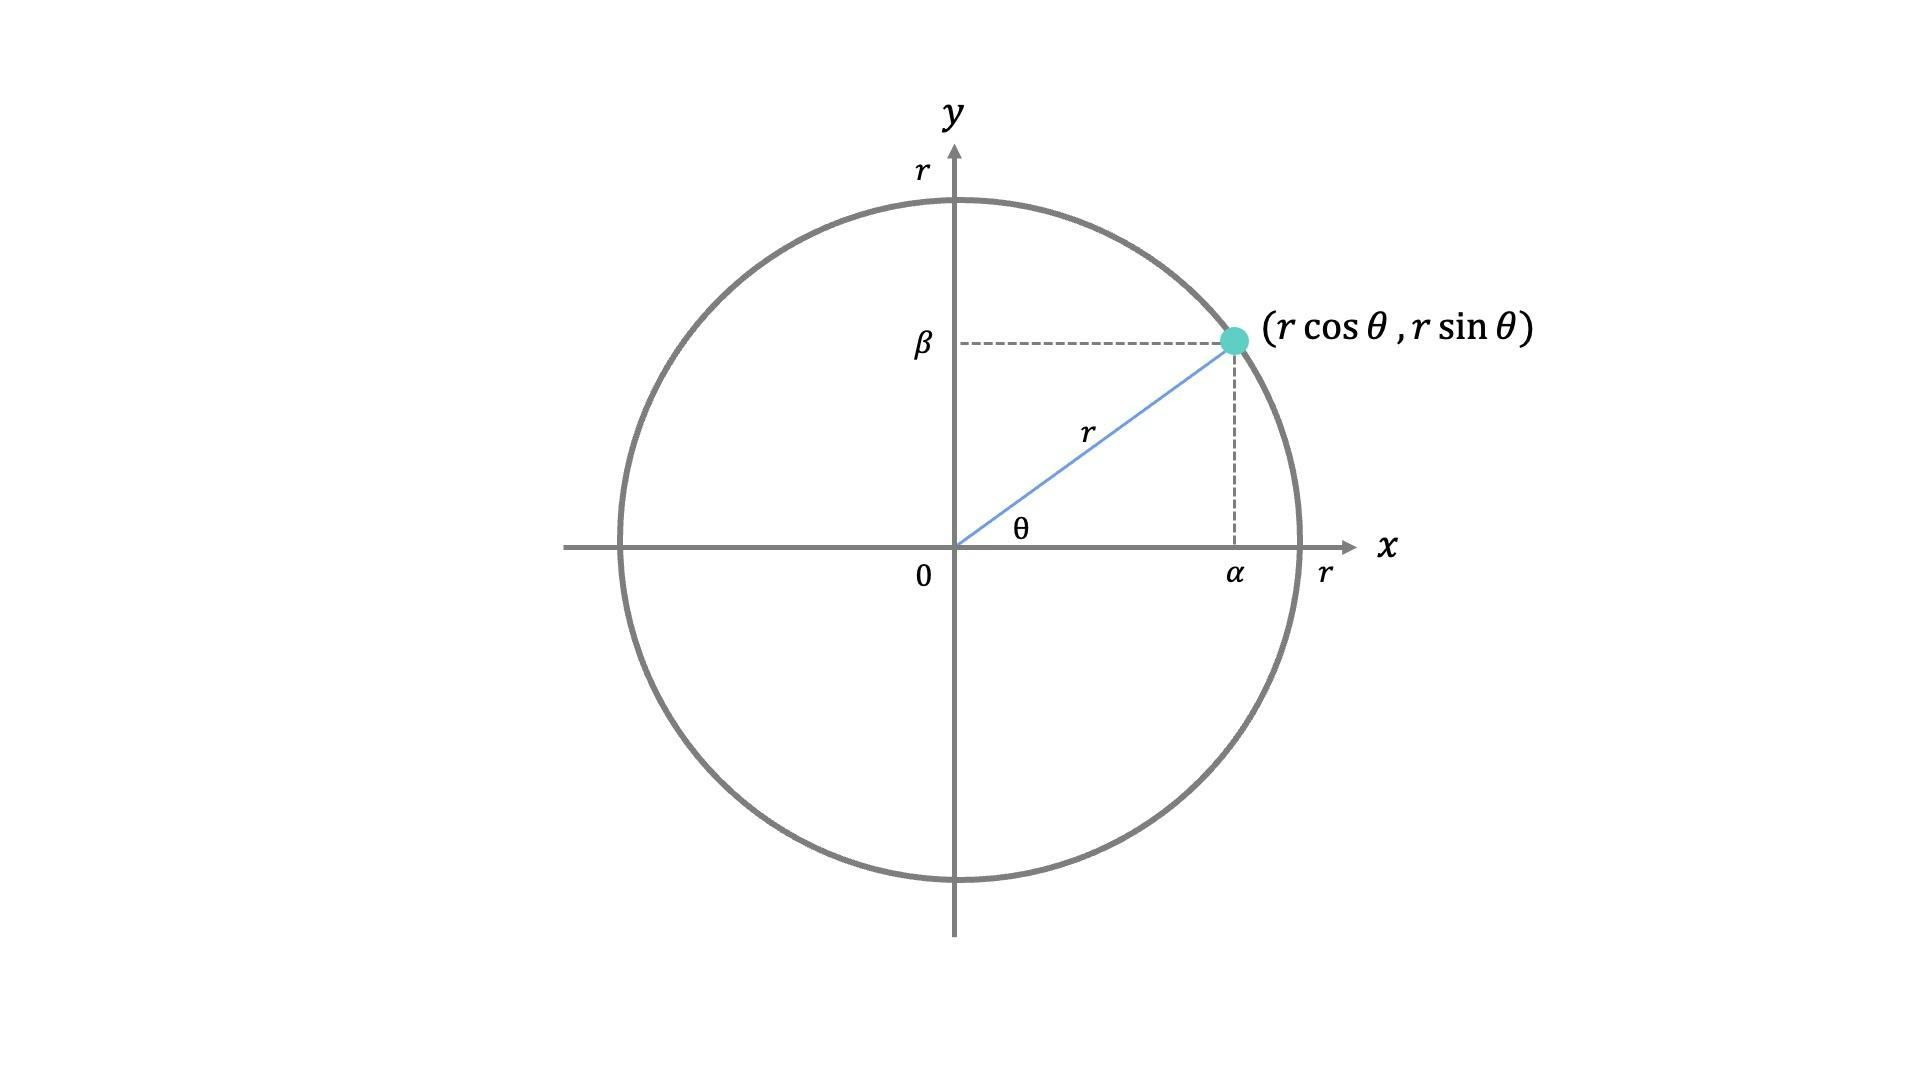 xとy軸に沿った円と、角度θでの三角関数の座標（r cos θ, r sin θ）を示す図